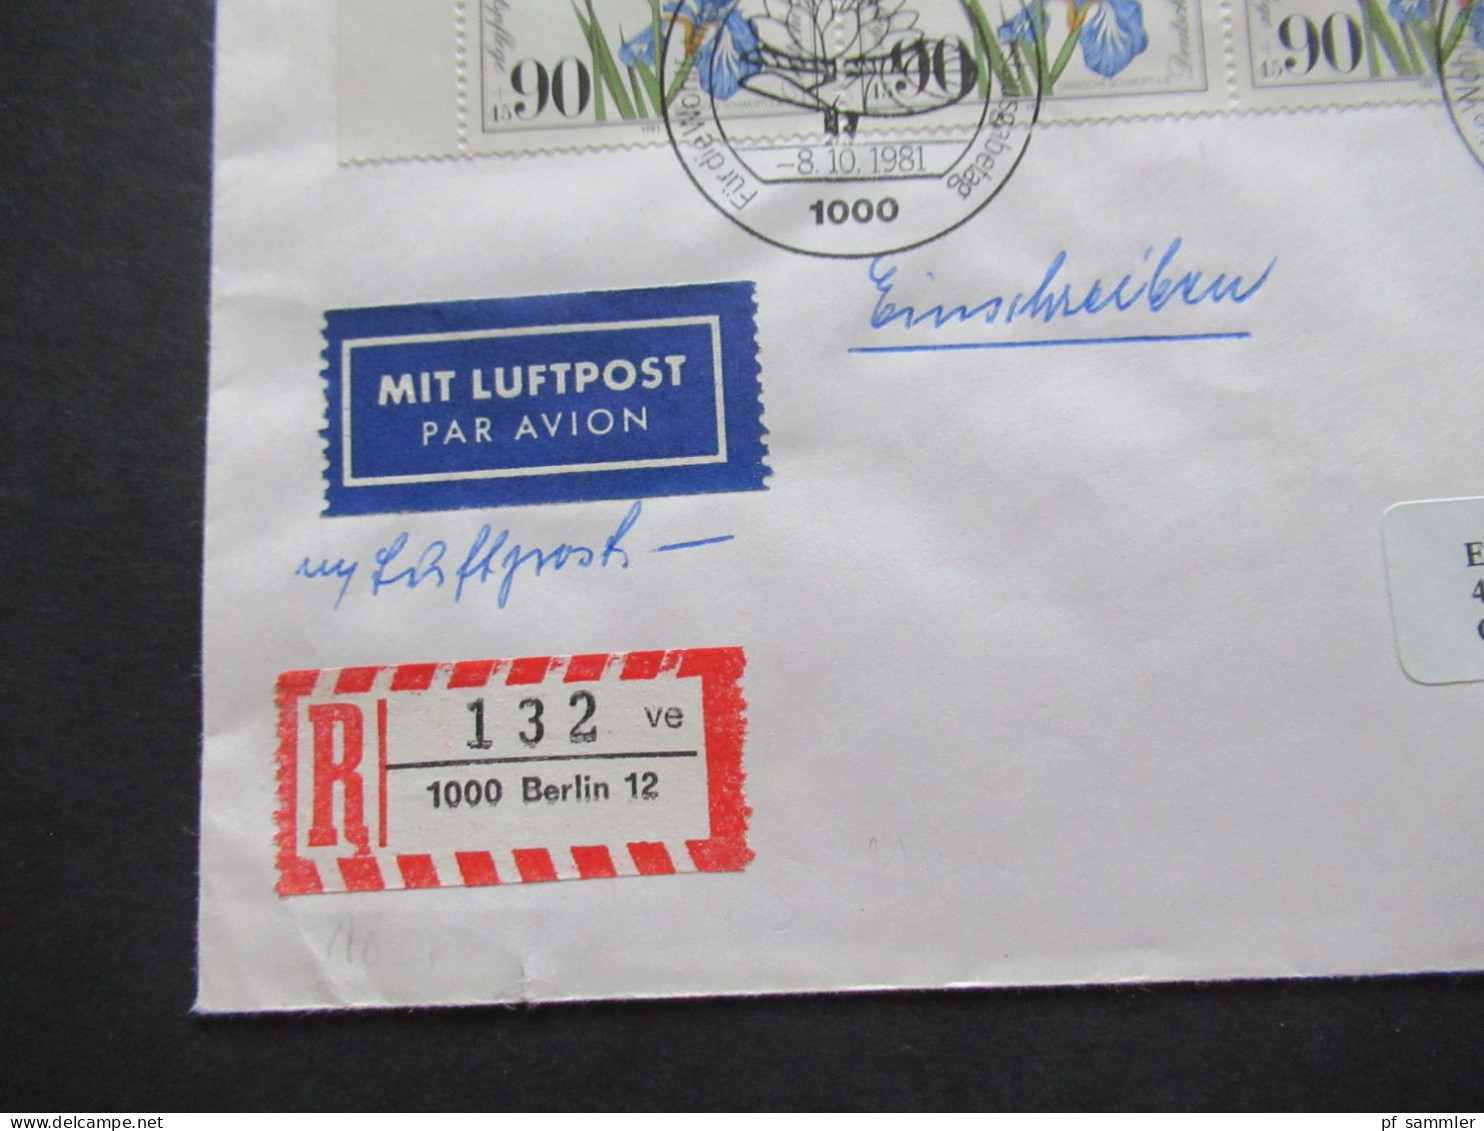 Berlin 1981 Wohlfahrt Nr.653 (4) Als 4er Block Eckrand OL MeF Auslandsbrief Einschreiben Berlin 12 Nach Chicago USA - Covers & Documents